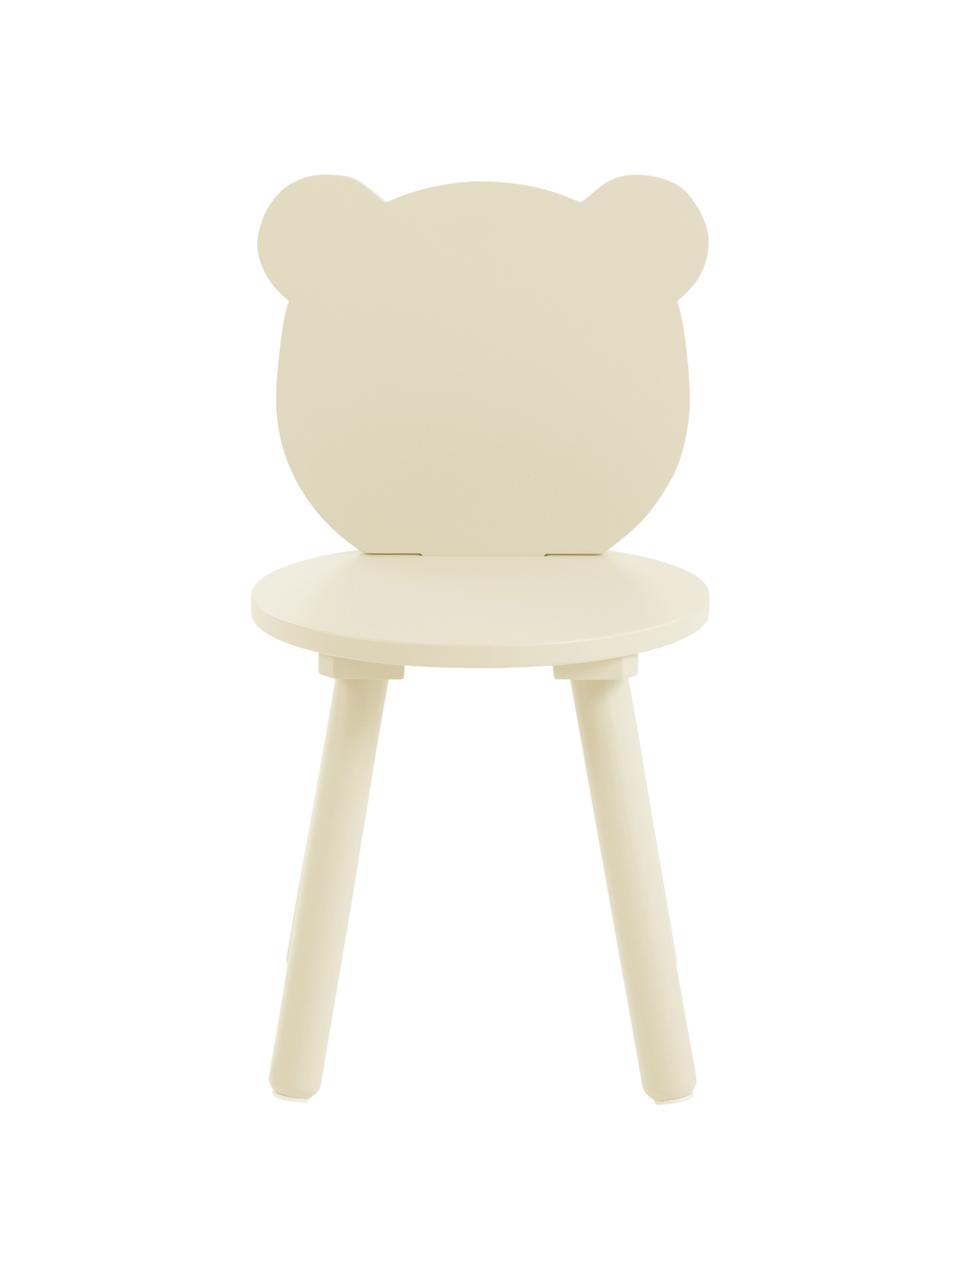 Dřevěné dětské židličky Beary, 2 ks, Borovicové dřevo, lakovaná MDF deska (dřevovláknitá deska střední hustoty), Žlutá, Š 30 cm, V 58 cm